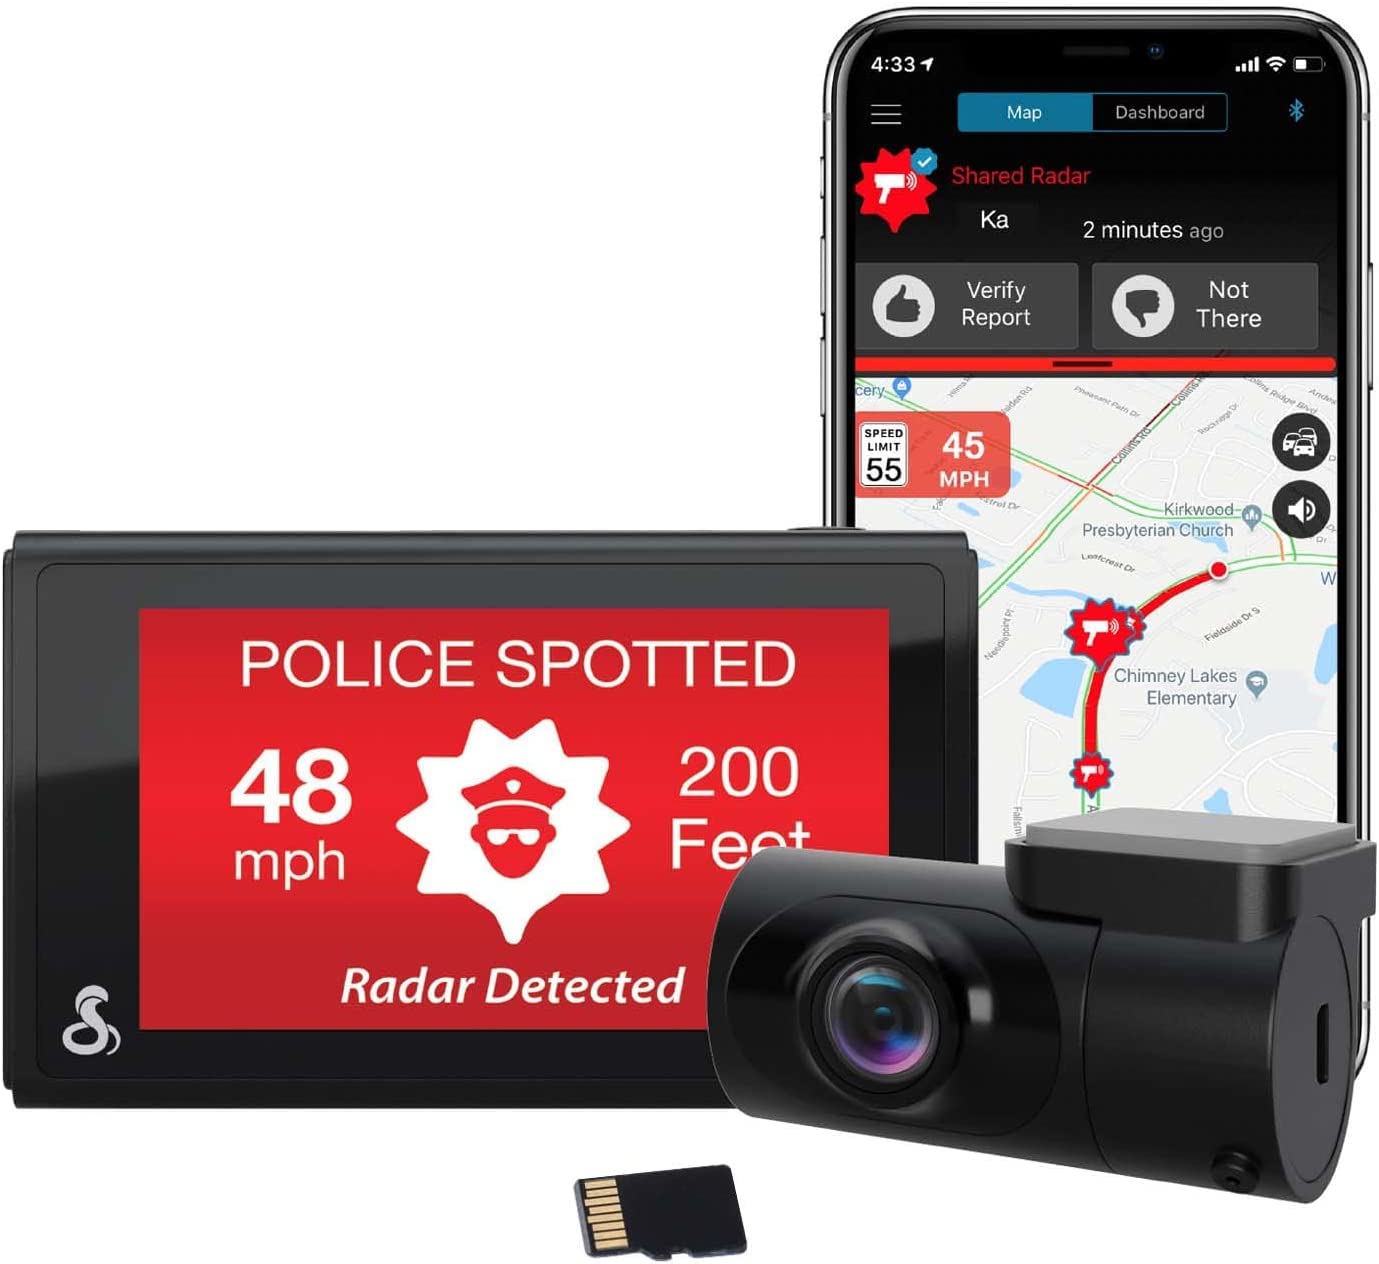 Cobra Smart Dashcam Autokamera + hinten Kamera QHD+ Video 1600P Auflösung, Sprachsteuerung, integriertes WiFi & GPS, 16GB SD Karte, 3" Display, gemeinsame Alarme, Notfall MayDay, Drive Smarter App von COBRA